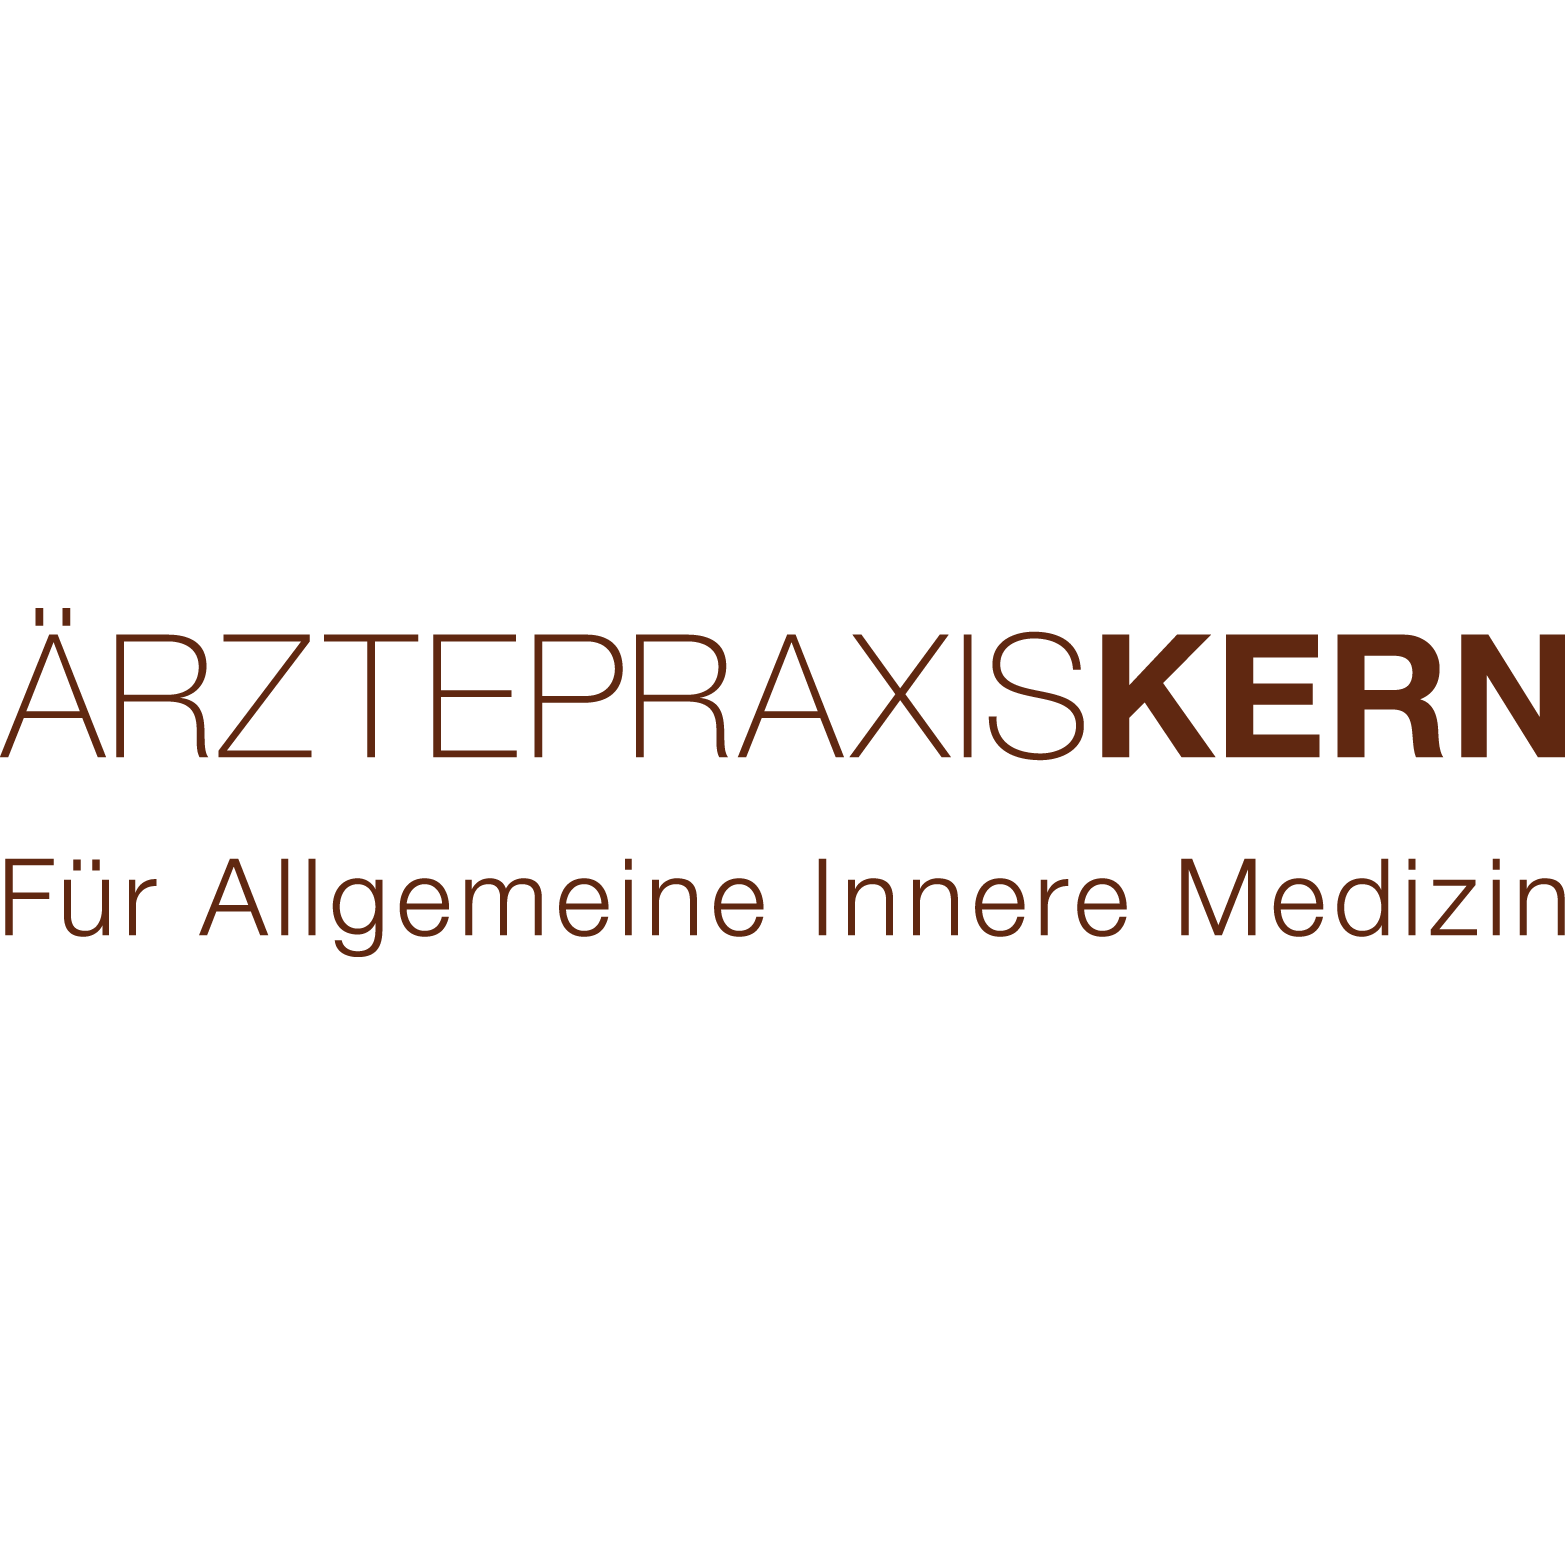 Ärztepraxis Kern Logo